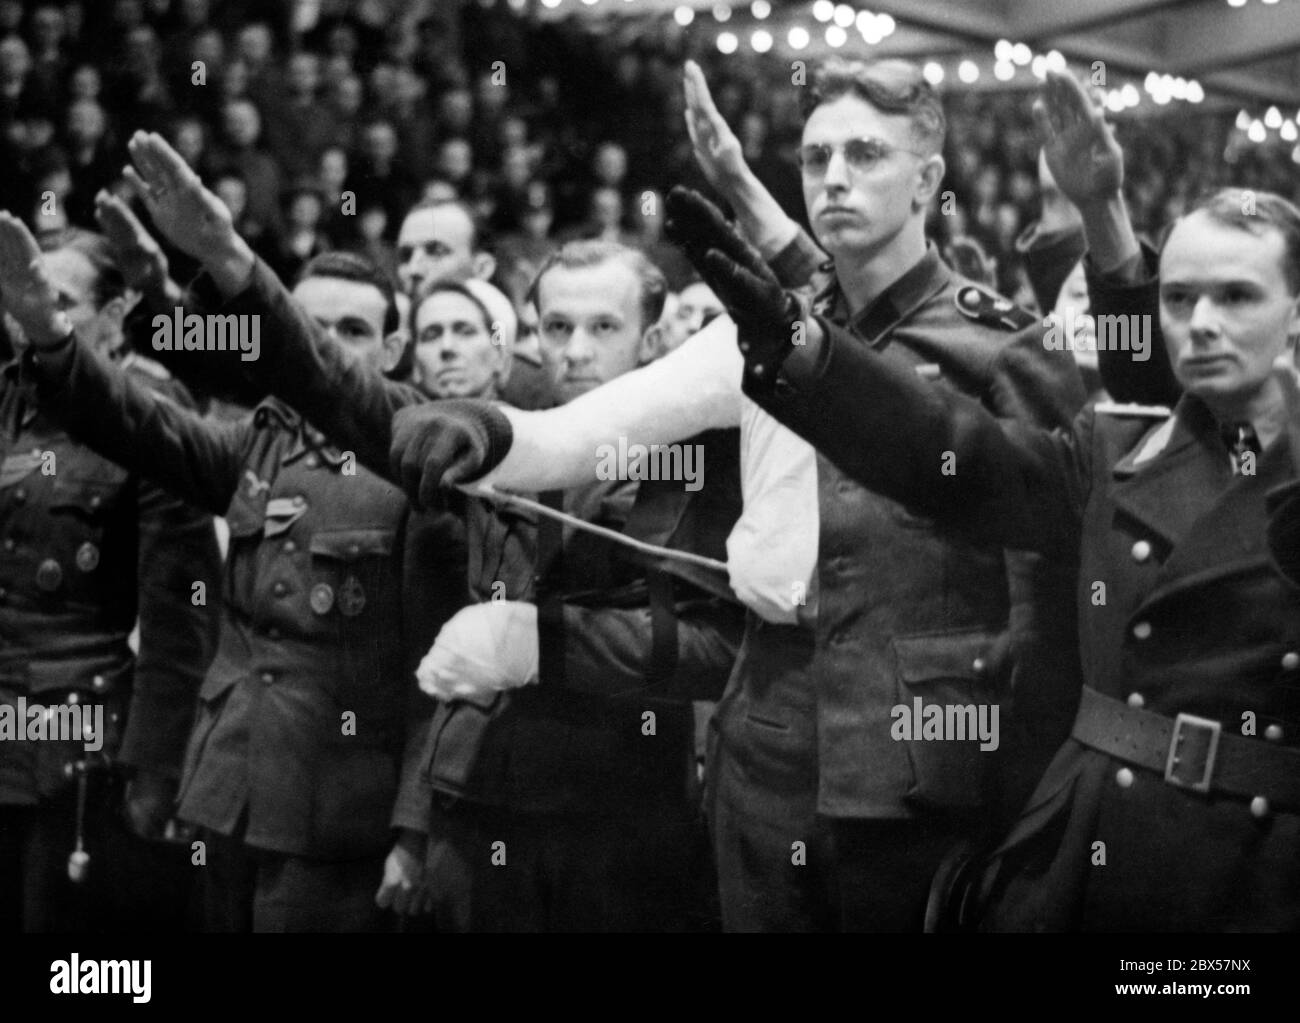 Nach der demagogischen Rede des Reichspropagandaministers Joseph Goebbels mit den berühmten Worten "Willst du totalen Krieg?" stehen einige der Anwesenden auf, um ihre Zustimmung zu bestätigen. Foto: Schwan Stockfoto